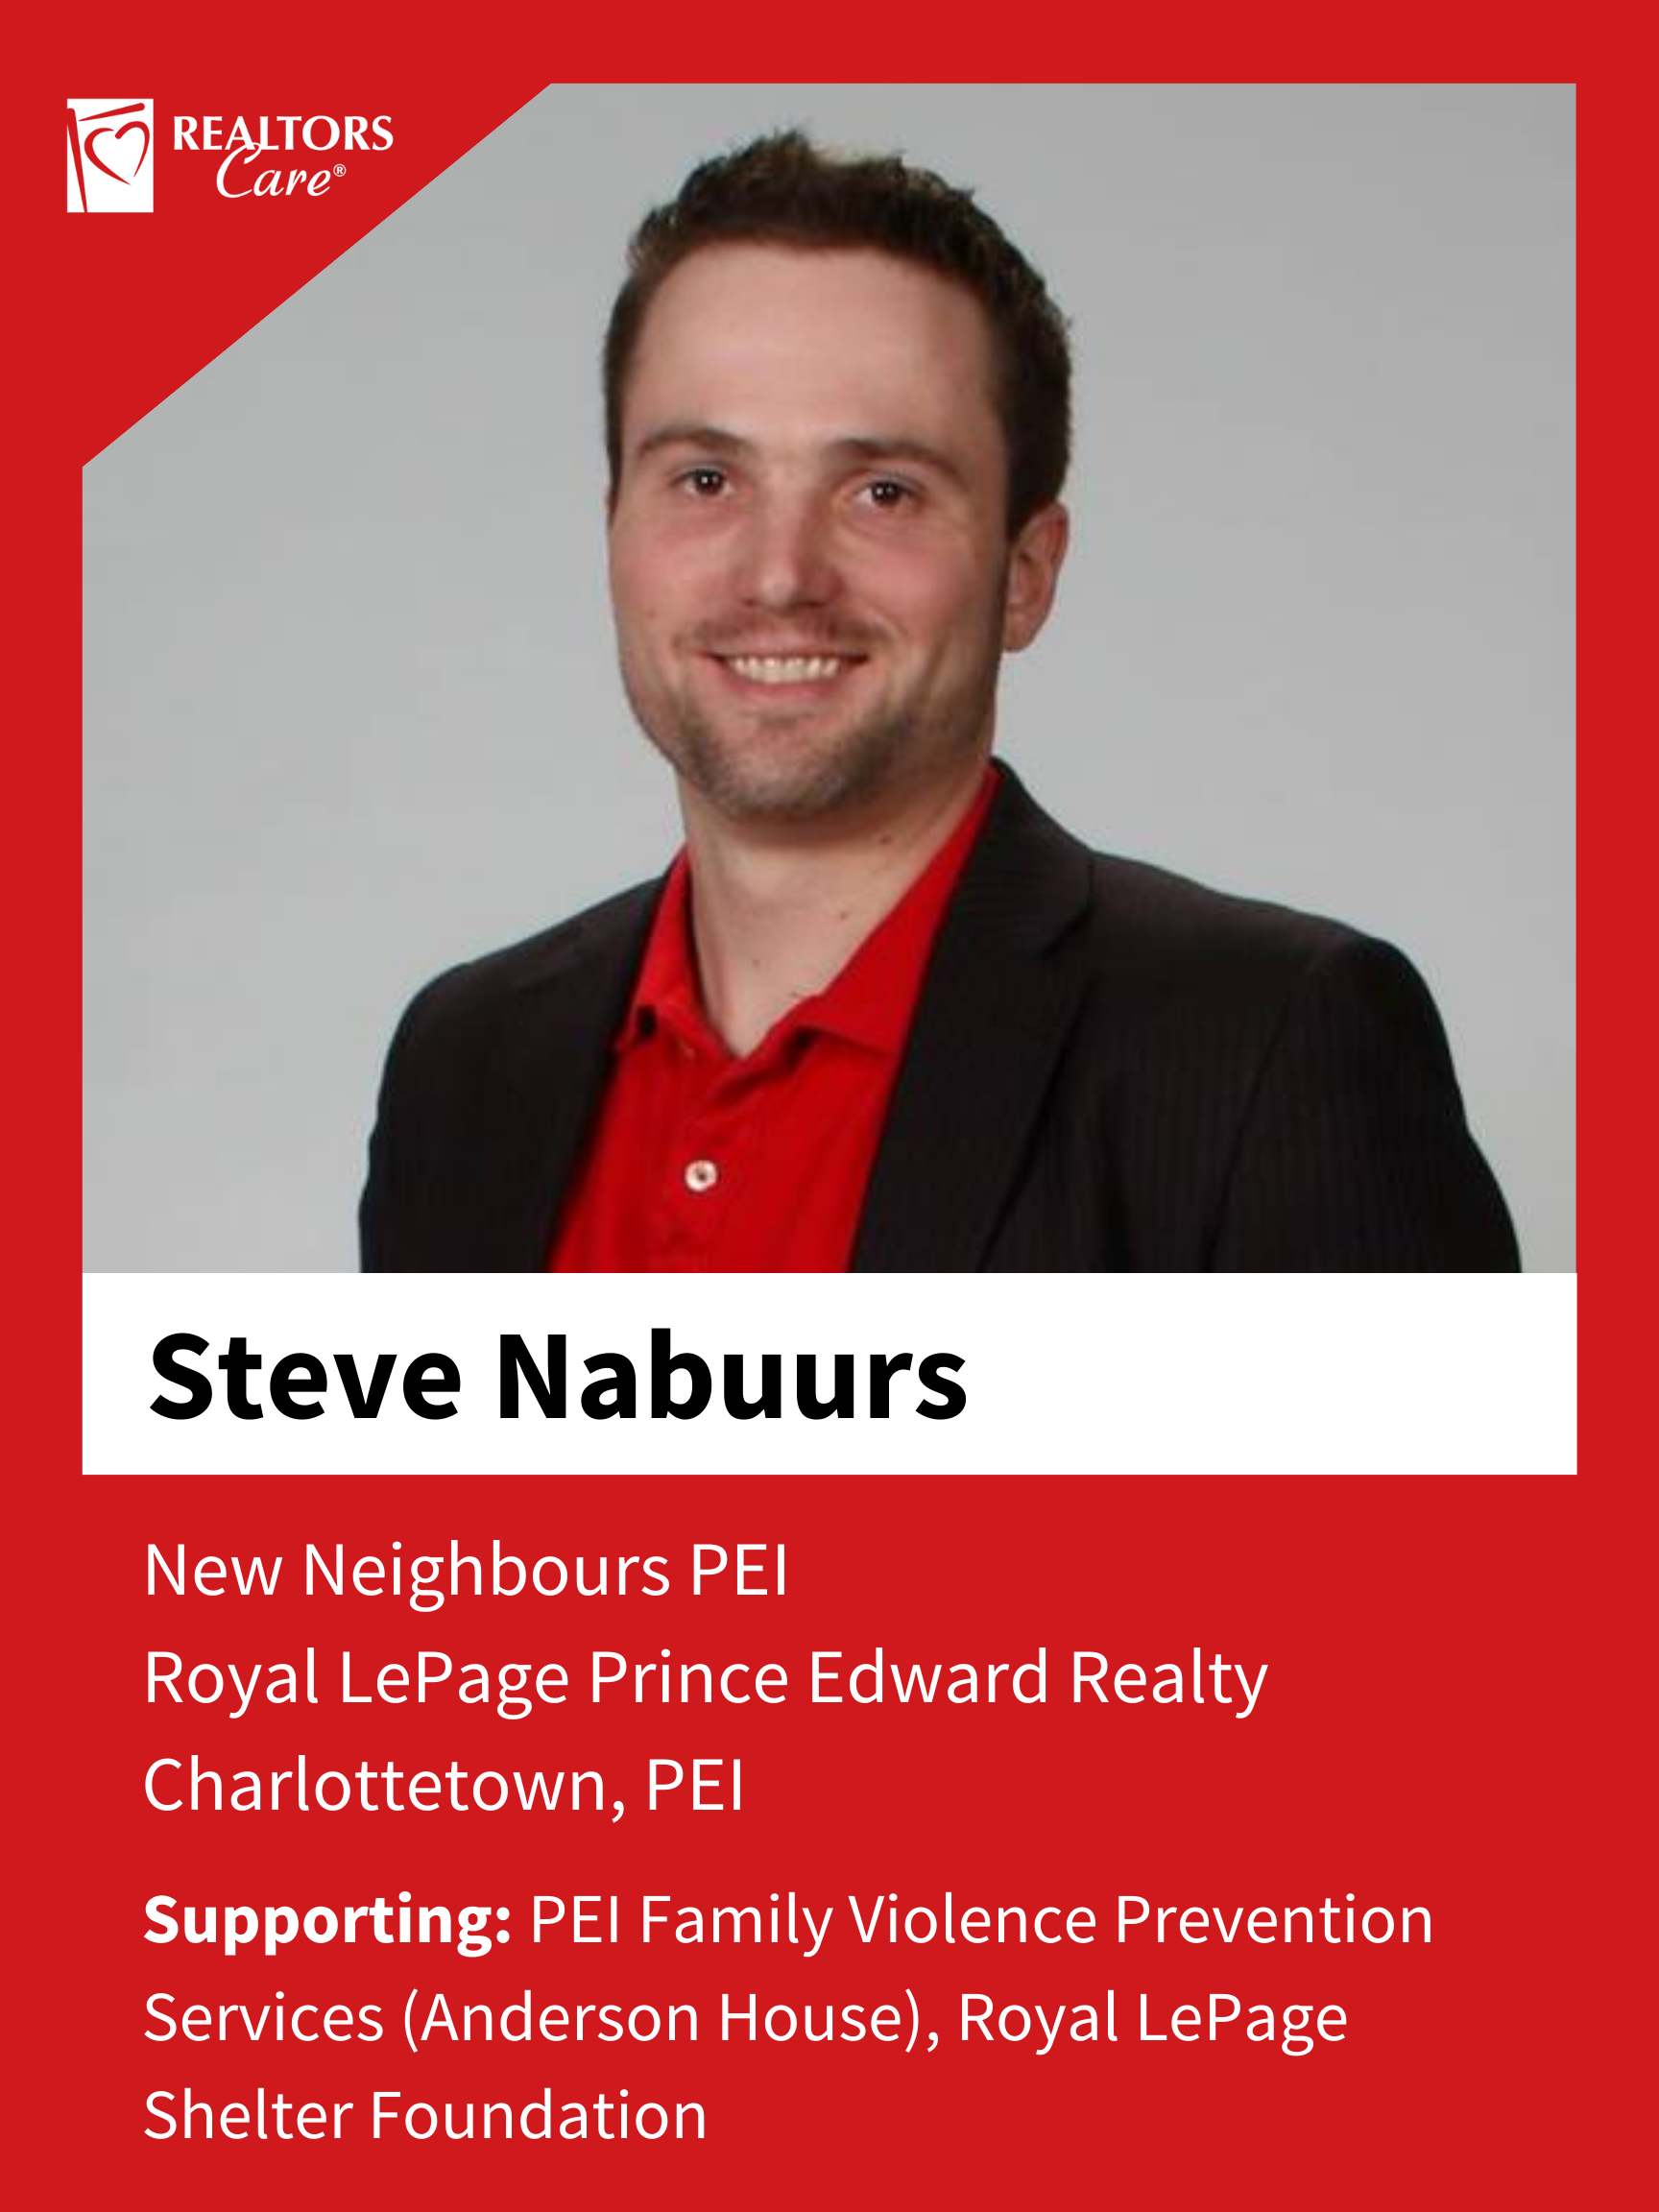 Steve Nabuurs
Charlottetown	PEI
